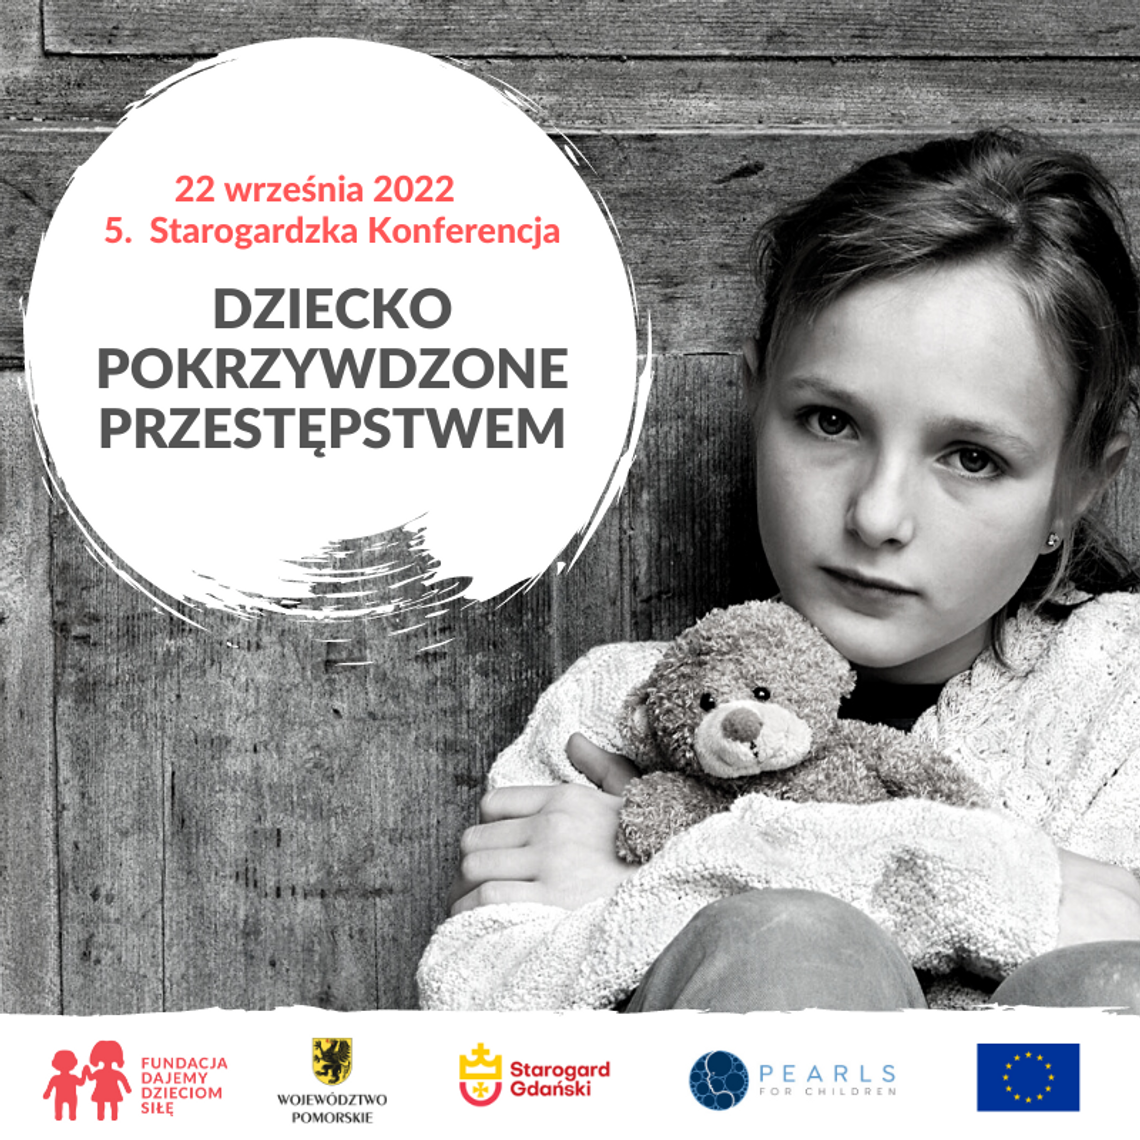 Starogard Gdański: 22 września odbędzie się konferencja "Dziecko Pokrzywdzone Przestępstwem"